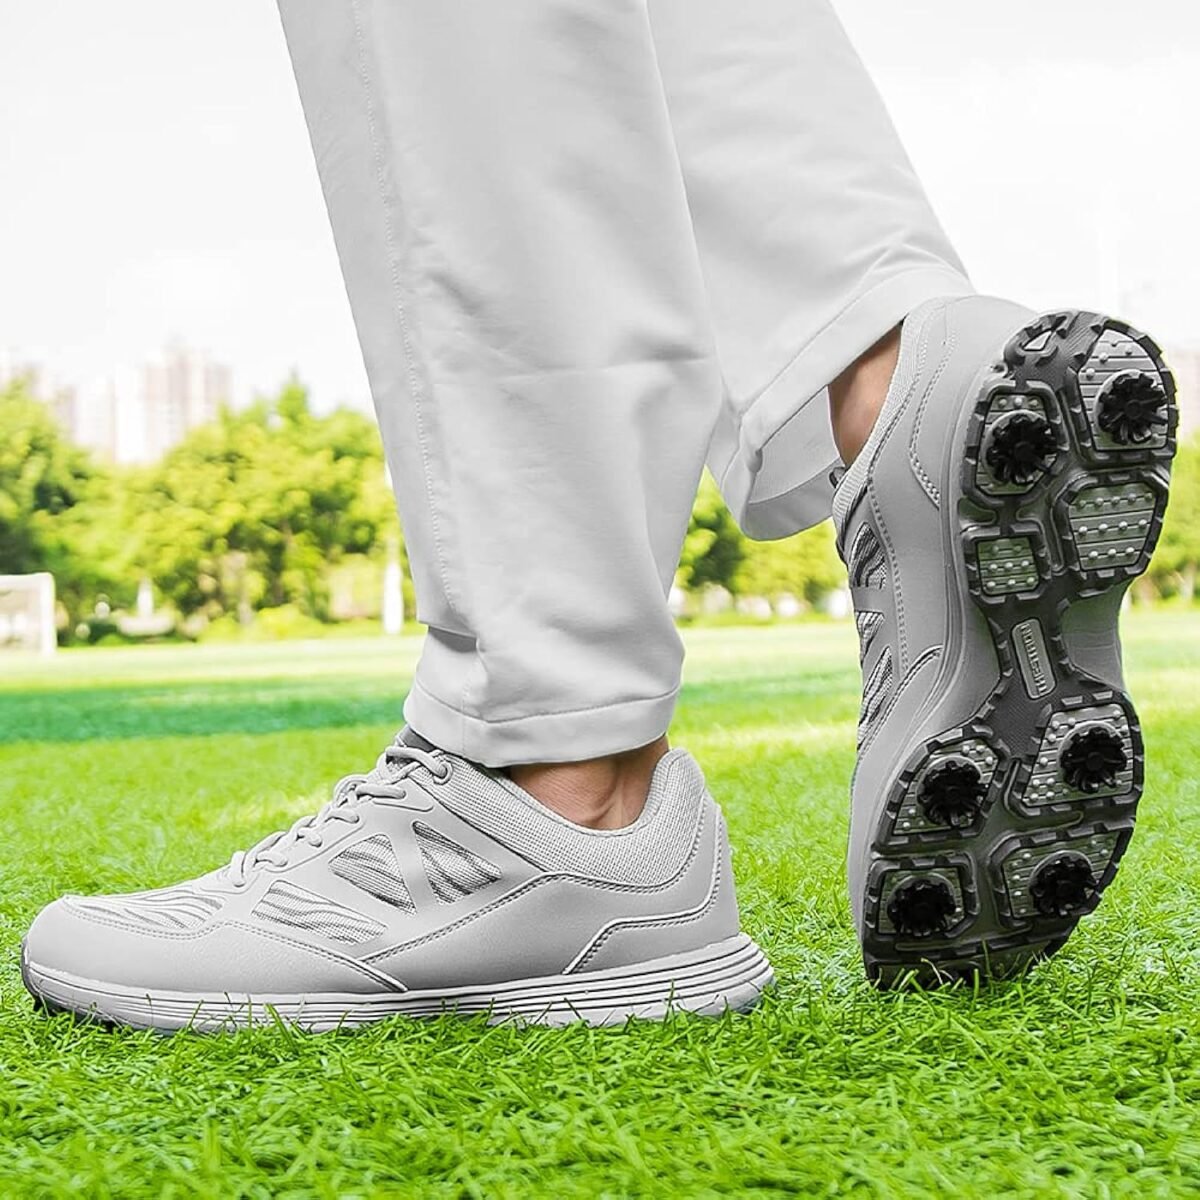 5 Golf Shoes: A Comprehensive Review & Comparison